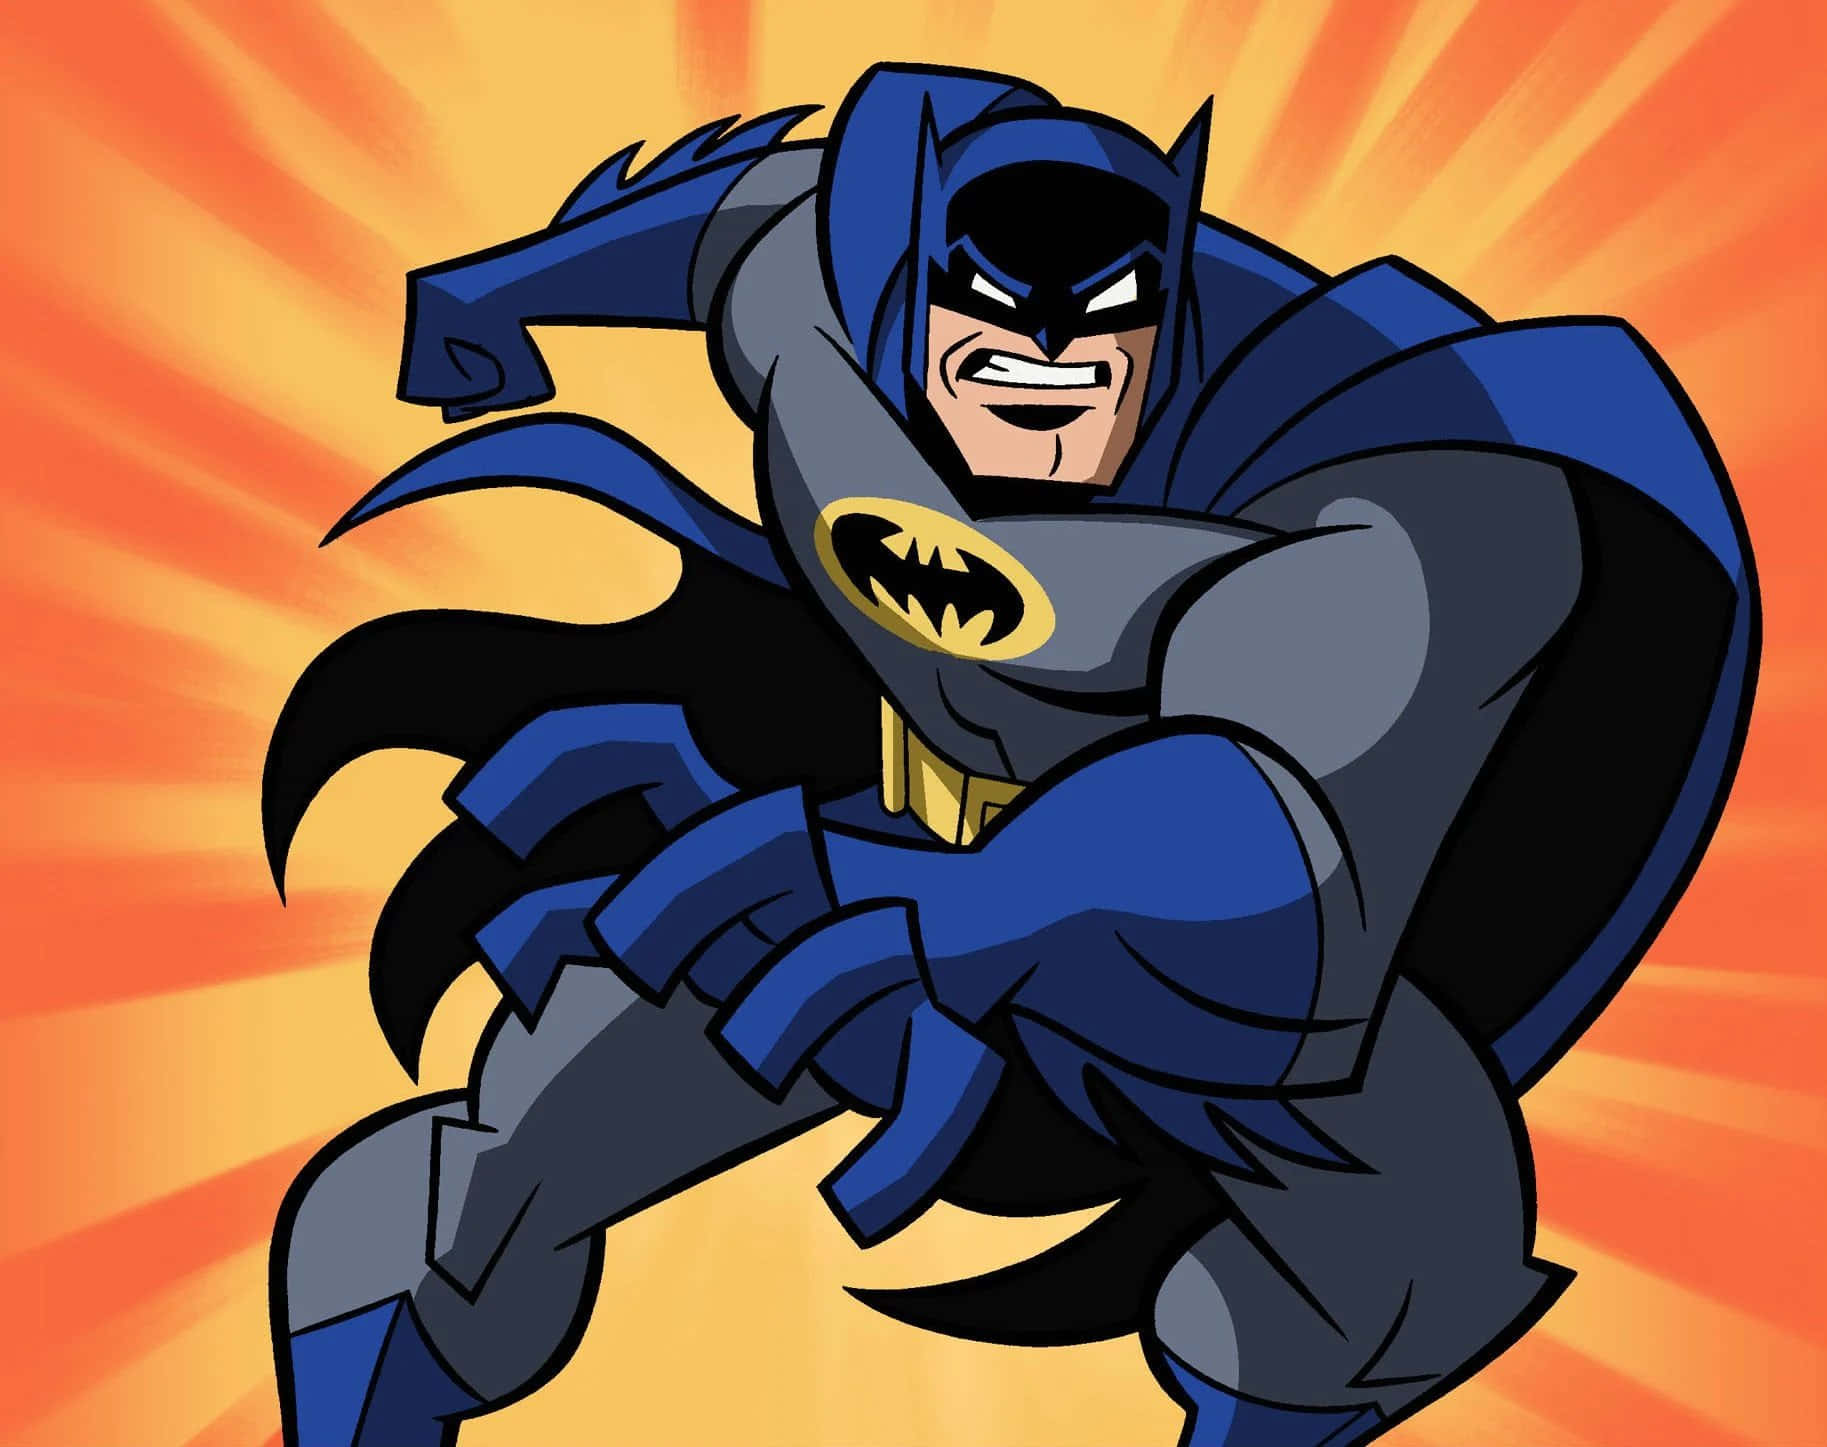 Cartoondo Batman Com Fundo Laranja Na Tela Do Computador Ou Do Telefone.